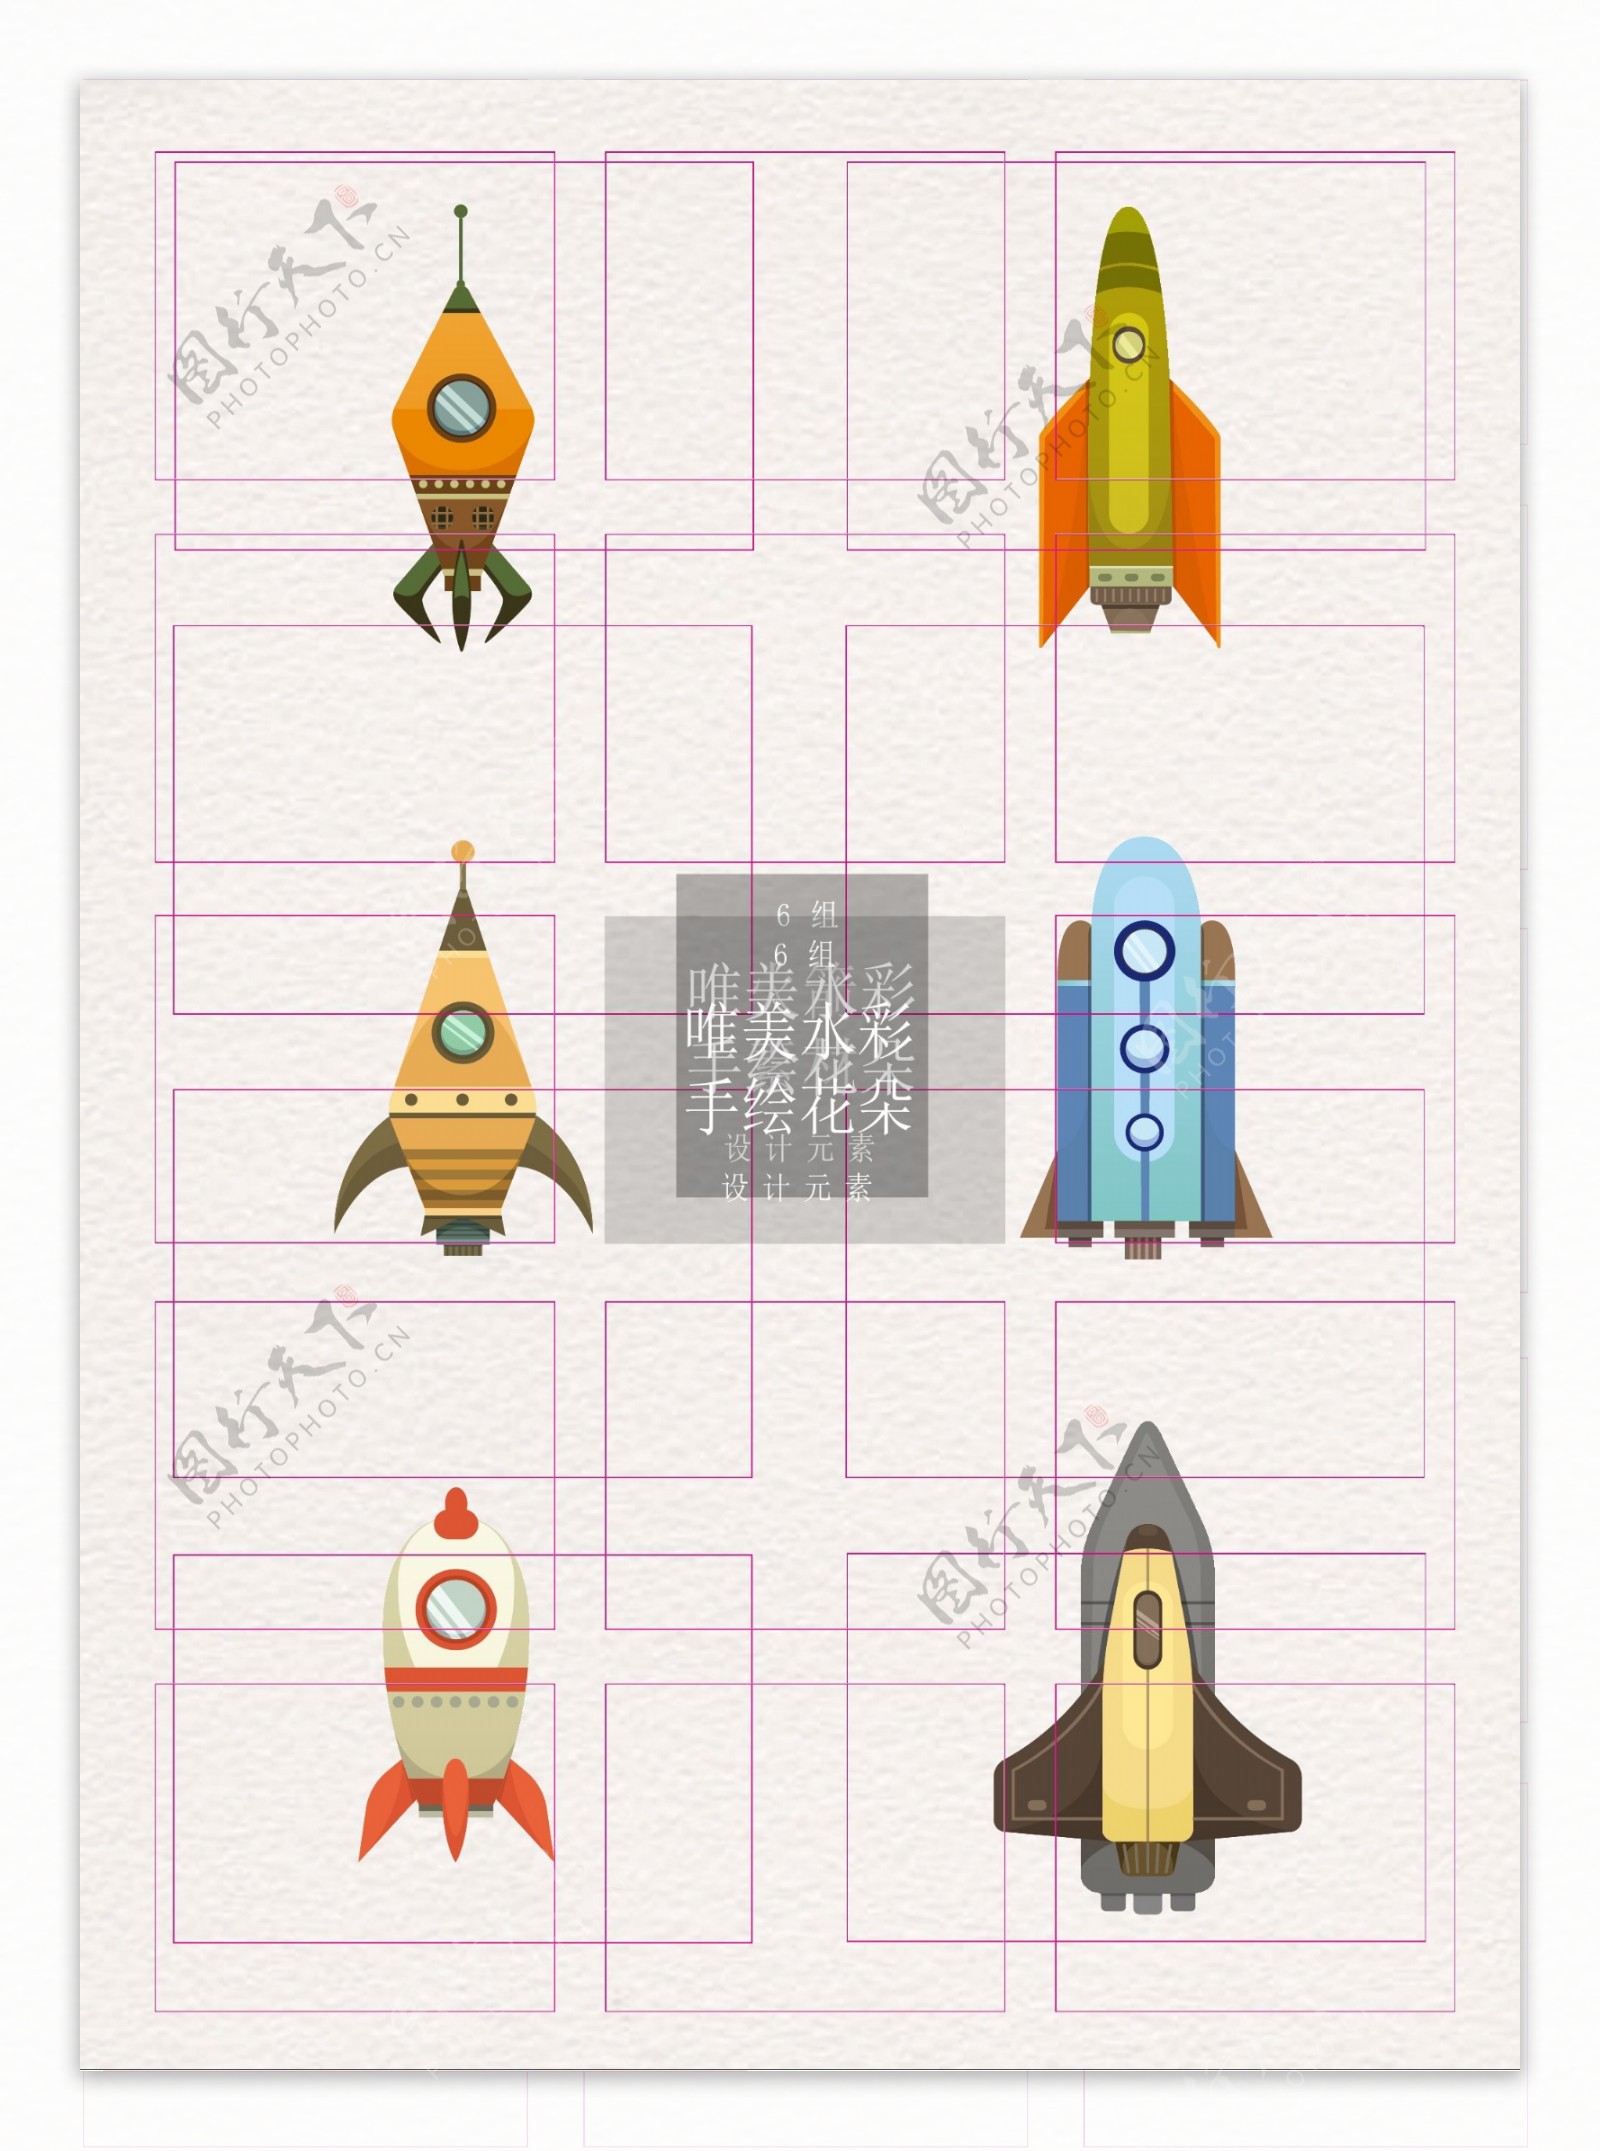 火箭彩色素材卡通ai矢量元素素材